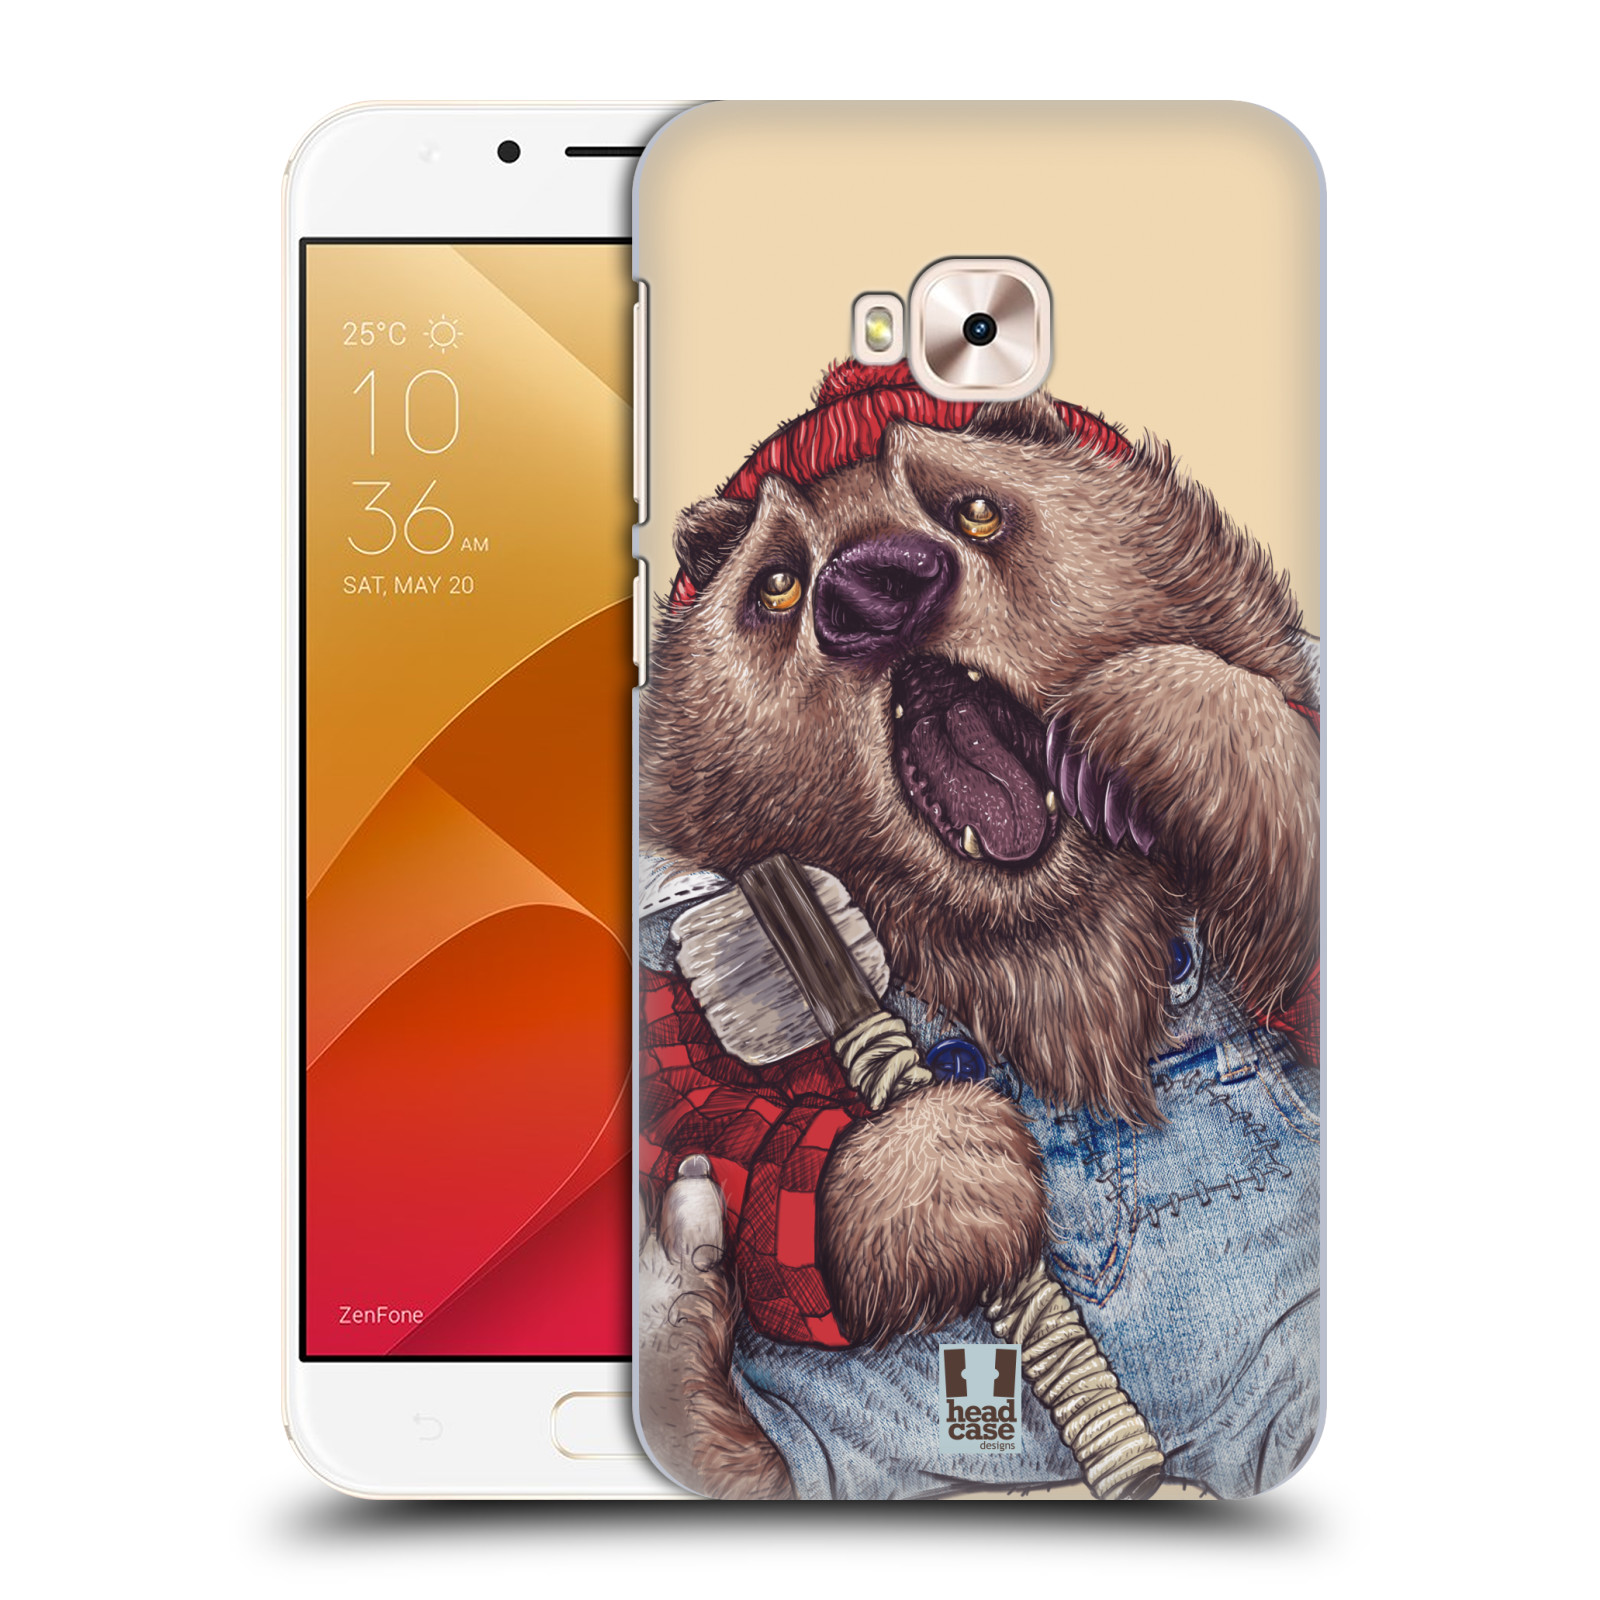 HEAD CASE plastový obal na mobil Asus Zenfone 4 Selfie Pro ZD552KL vzor Kreslená zvířátka medvěd